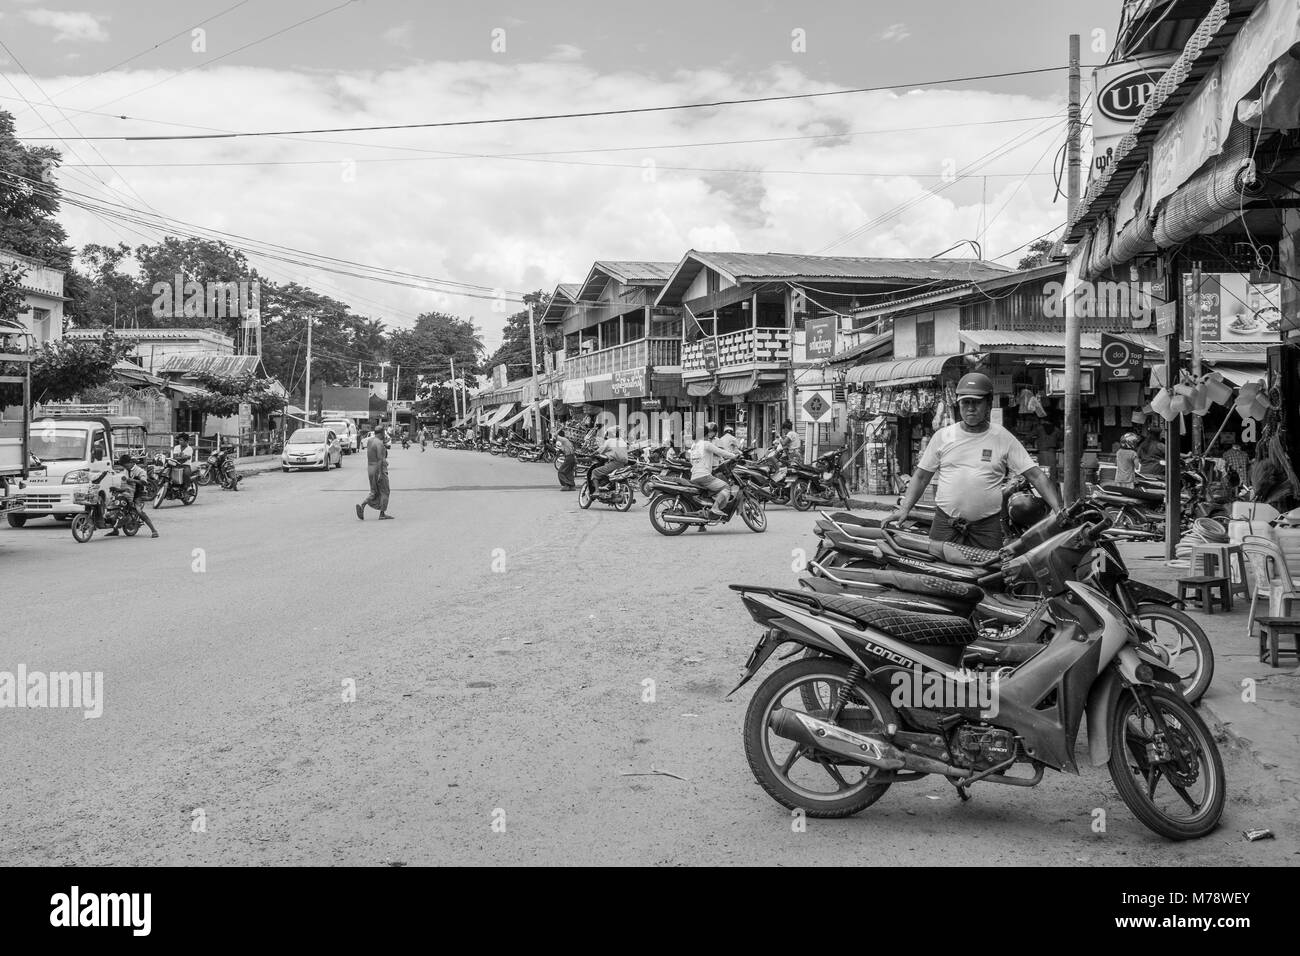 Un chemin de sable à côté du marché Nyaung U près de Bagan, Myanmar, Birmanie. étals de marché et les motos garées, mode de transport commun en Asie du sud-est Banque D'Images